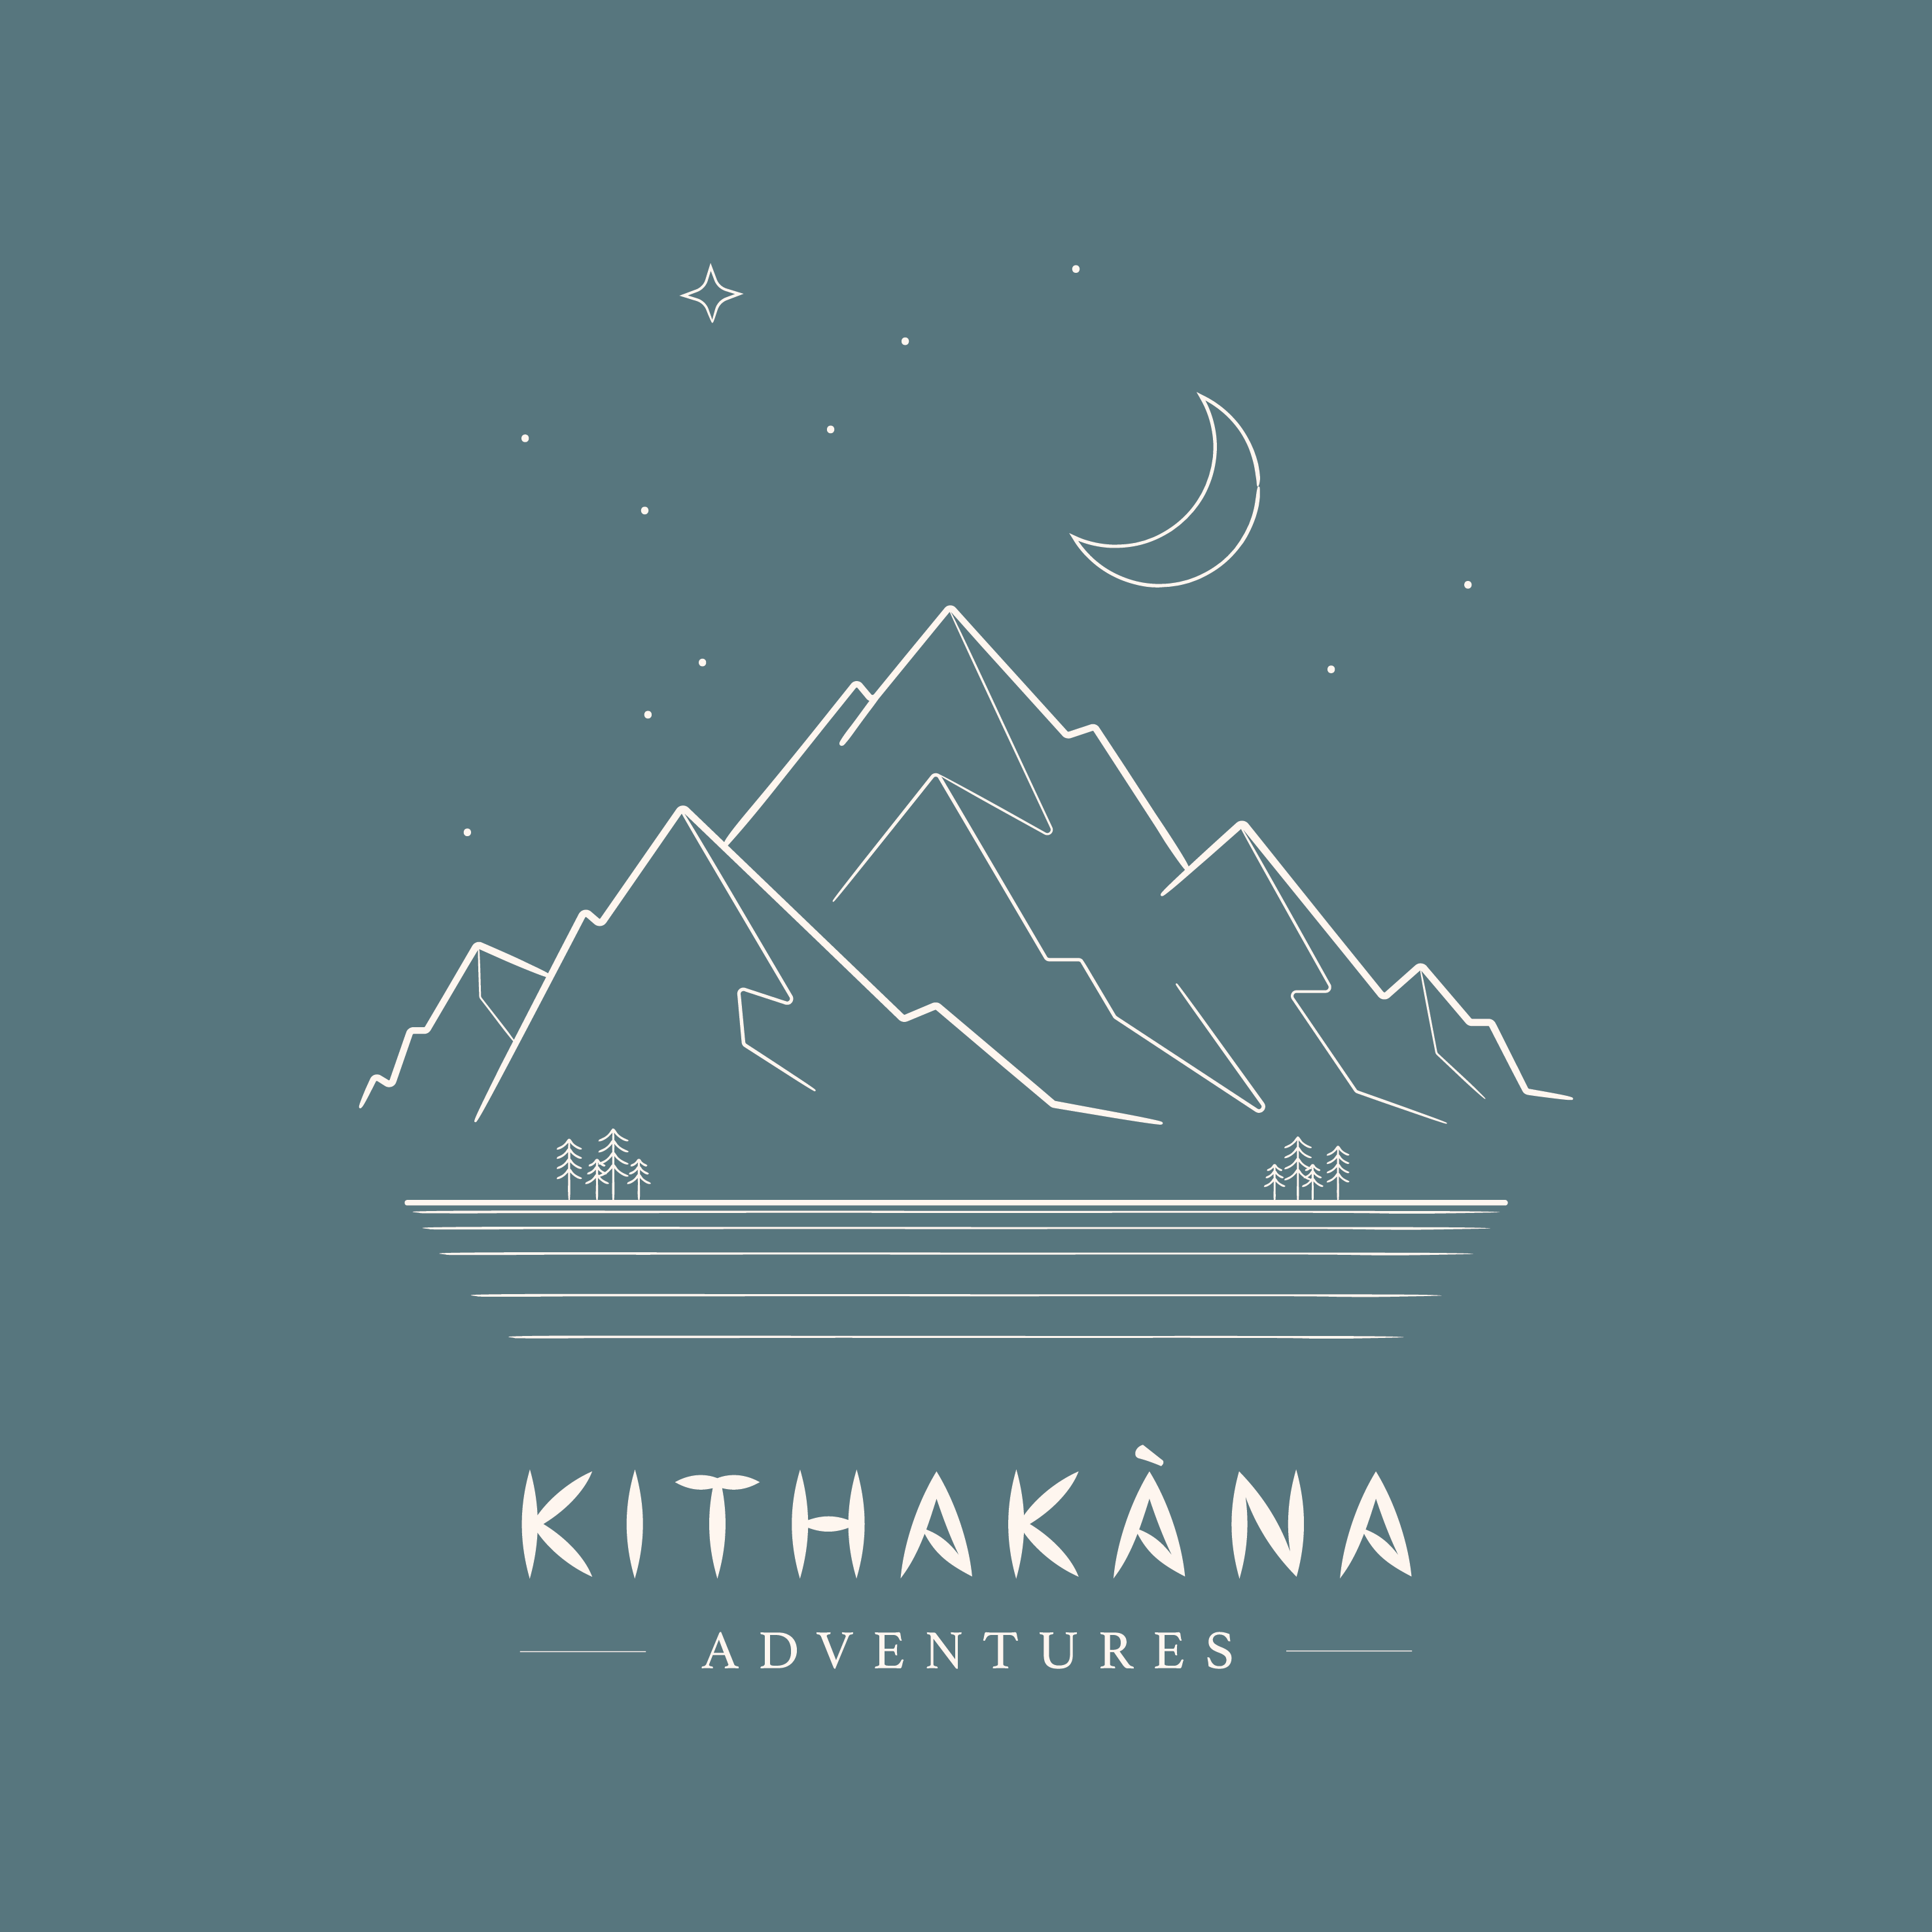 LOGO Kithakana 03